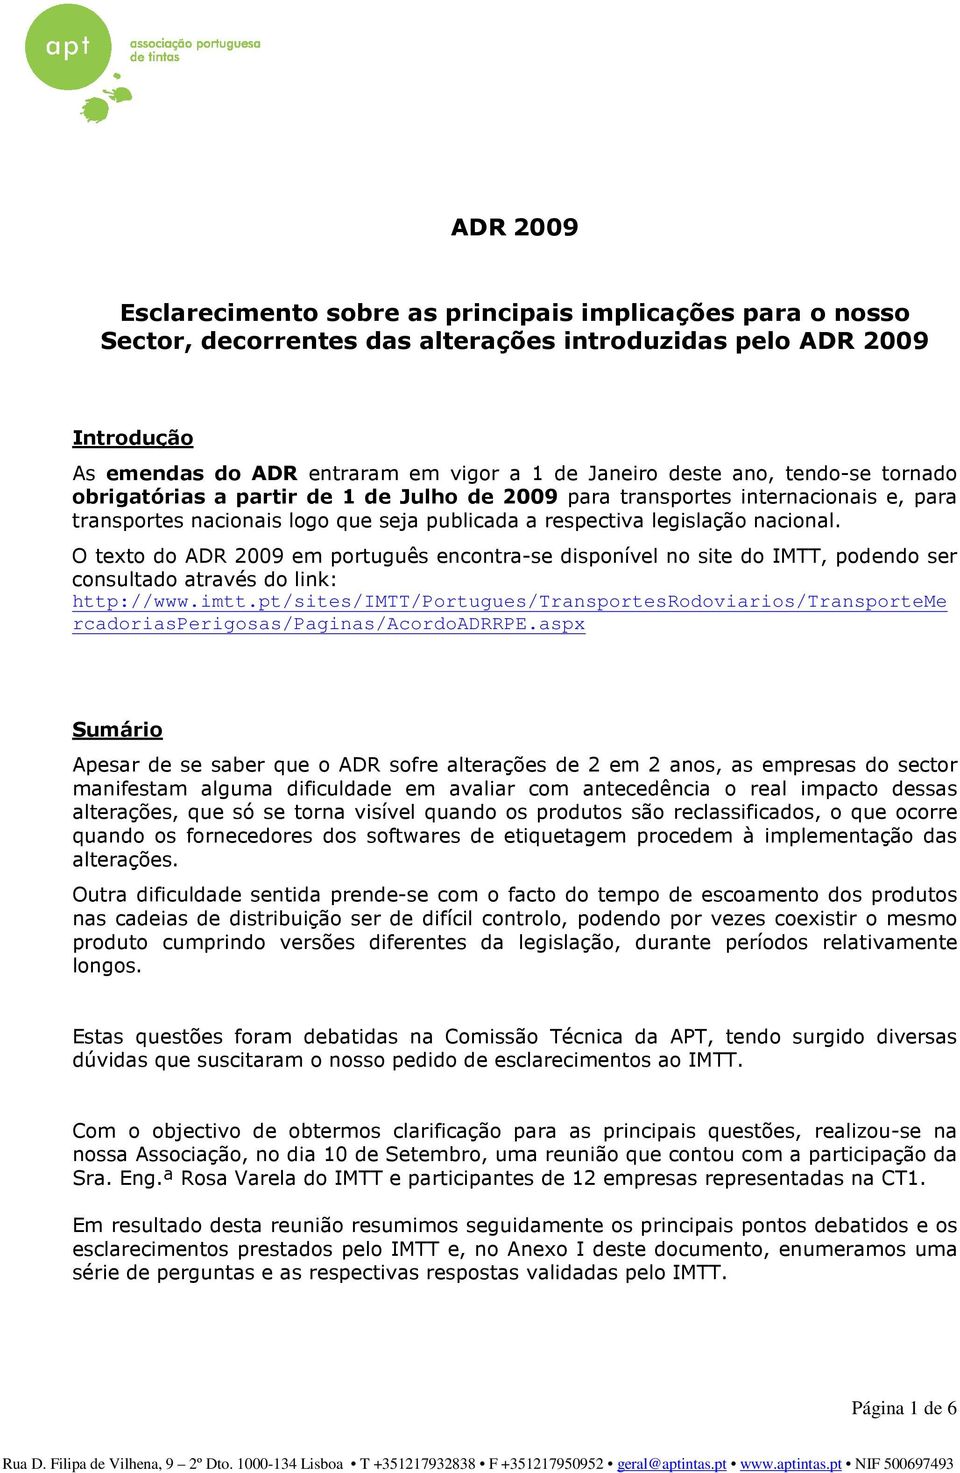 O texto do ADR 2009 em português encontra-se disponível no site do IMTT, podendo ser consultado através do link: http://www.imtt.